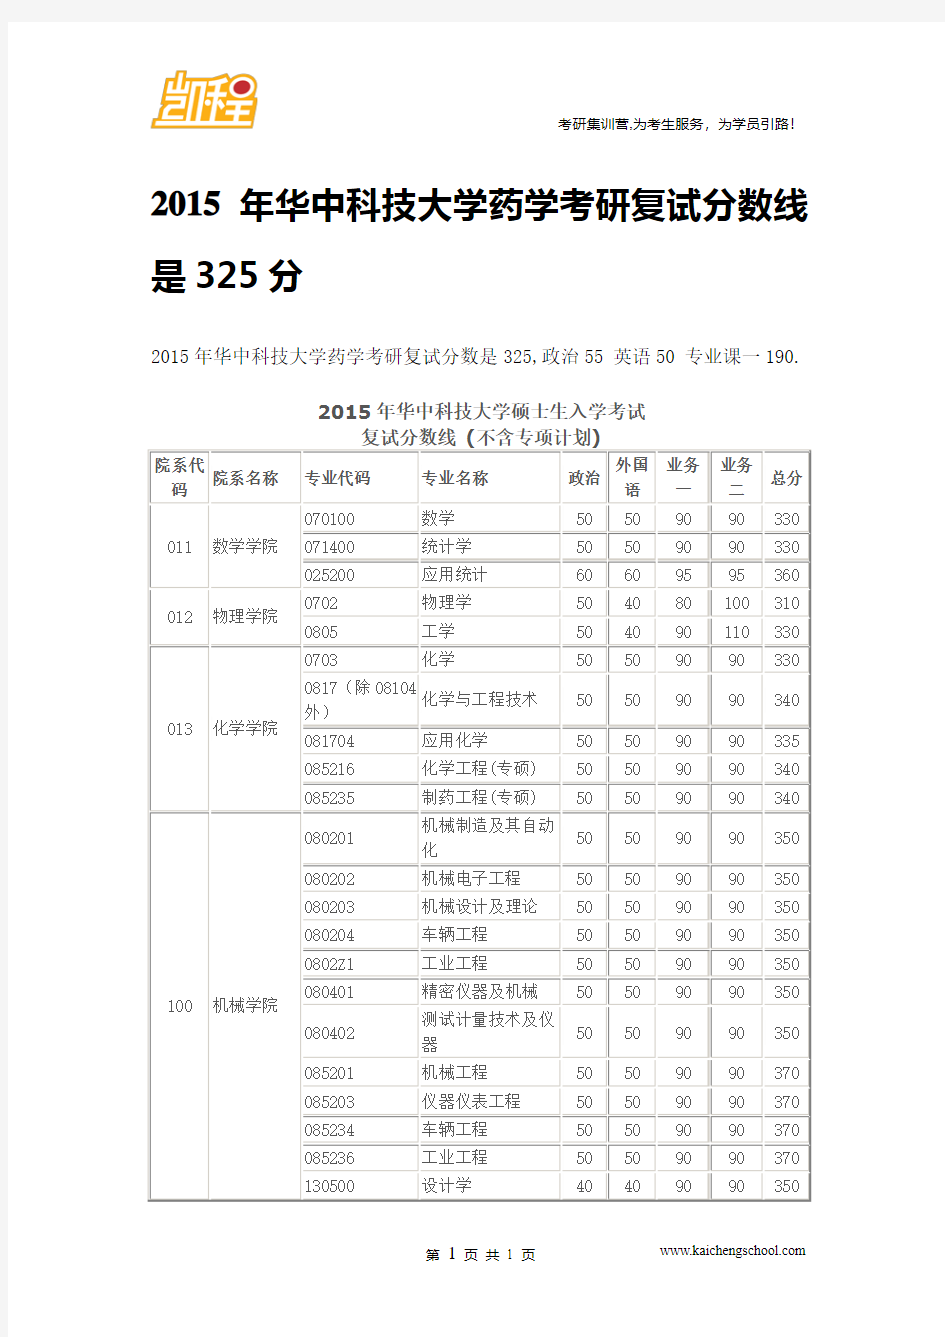 2015年华中科技大学药学考研复试分数线是325分